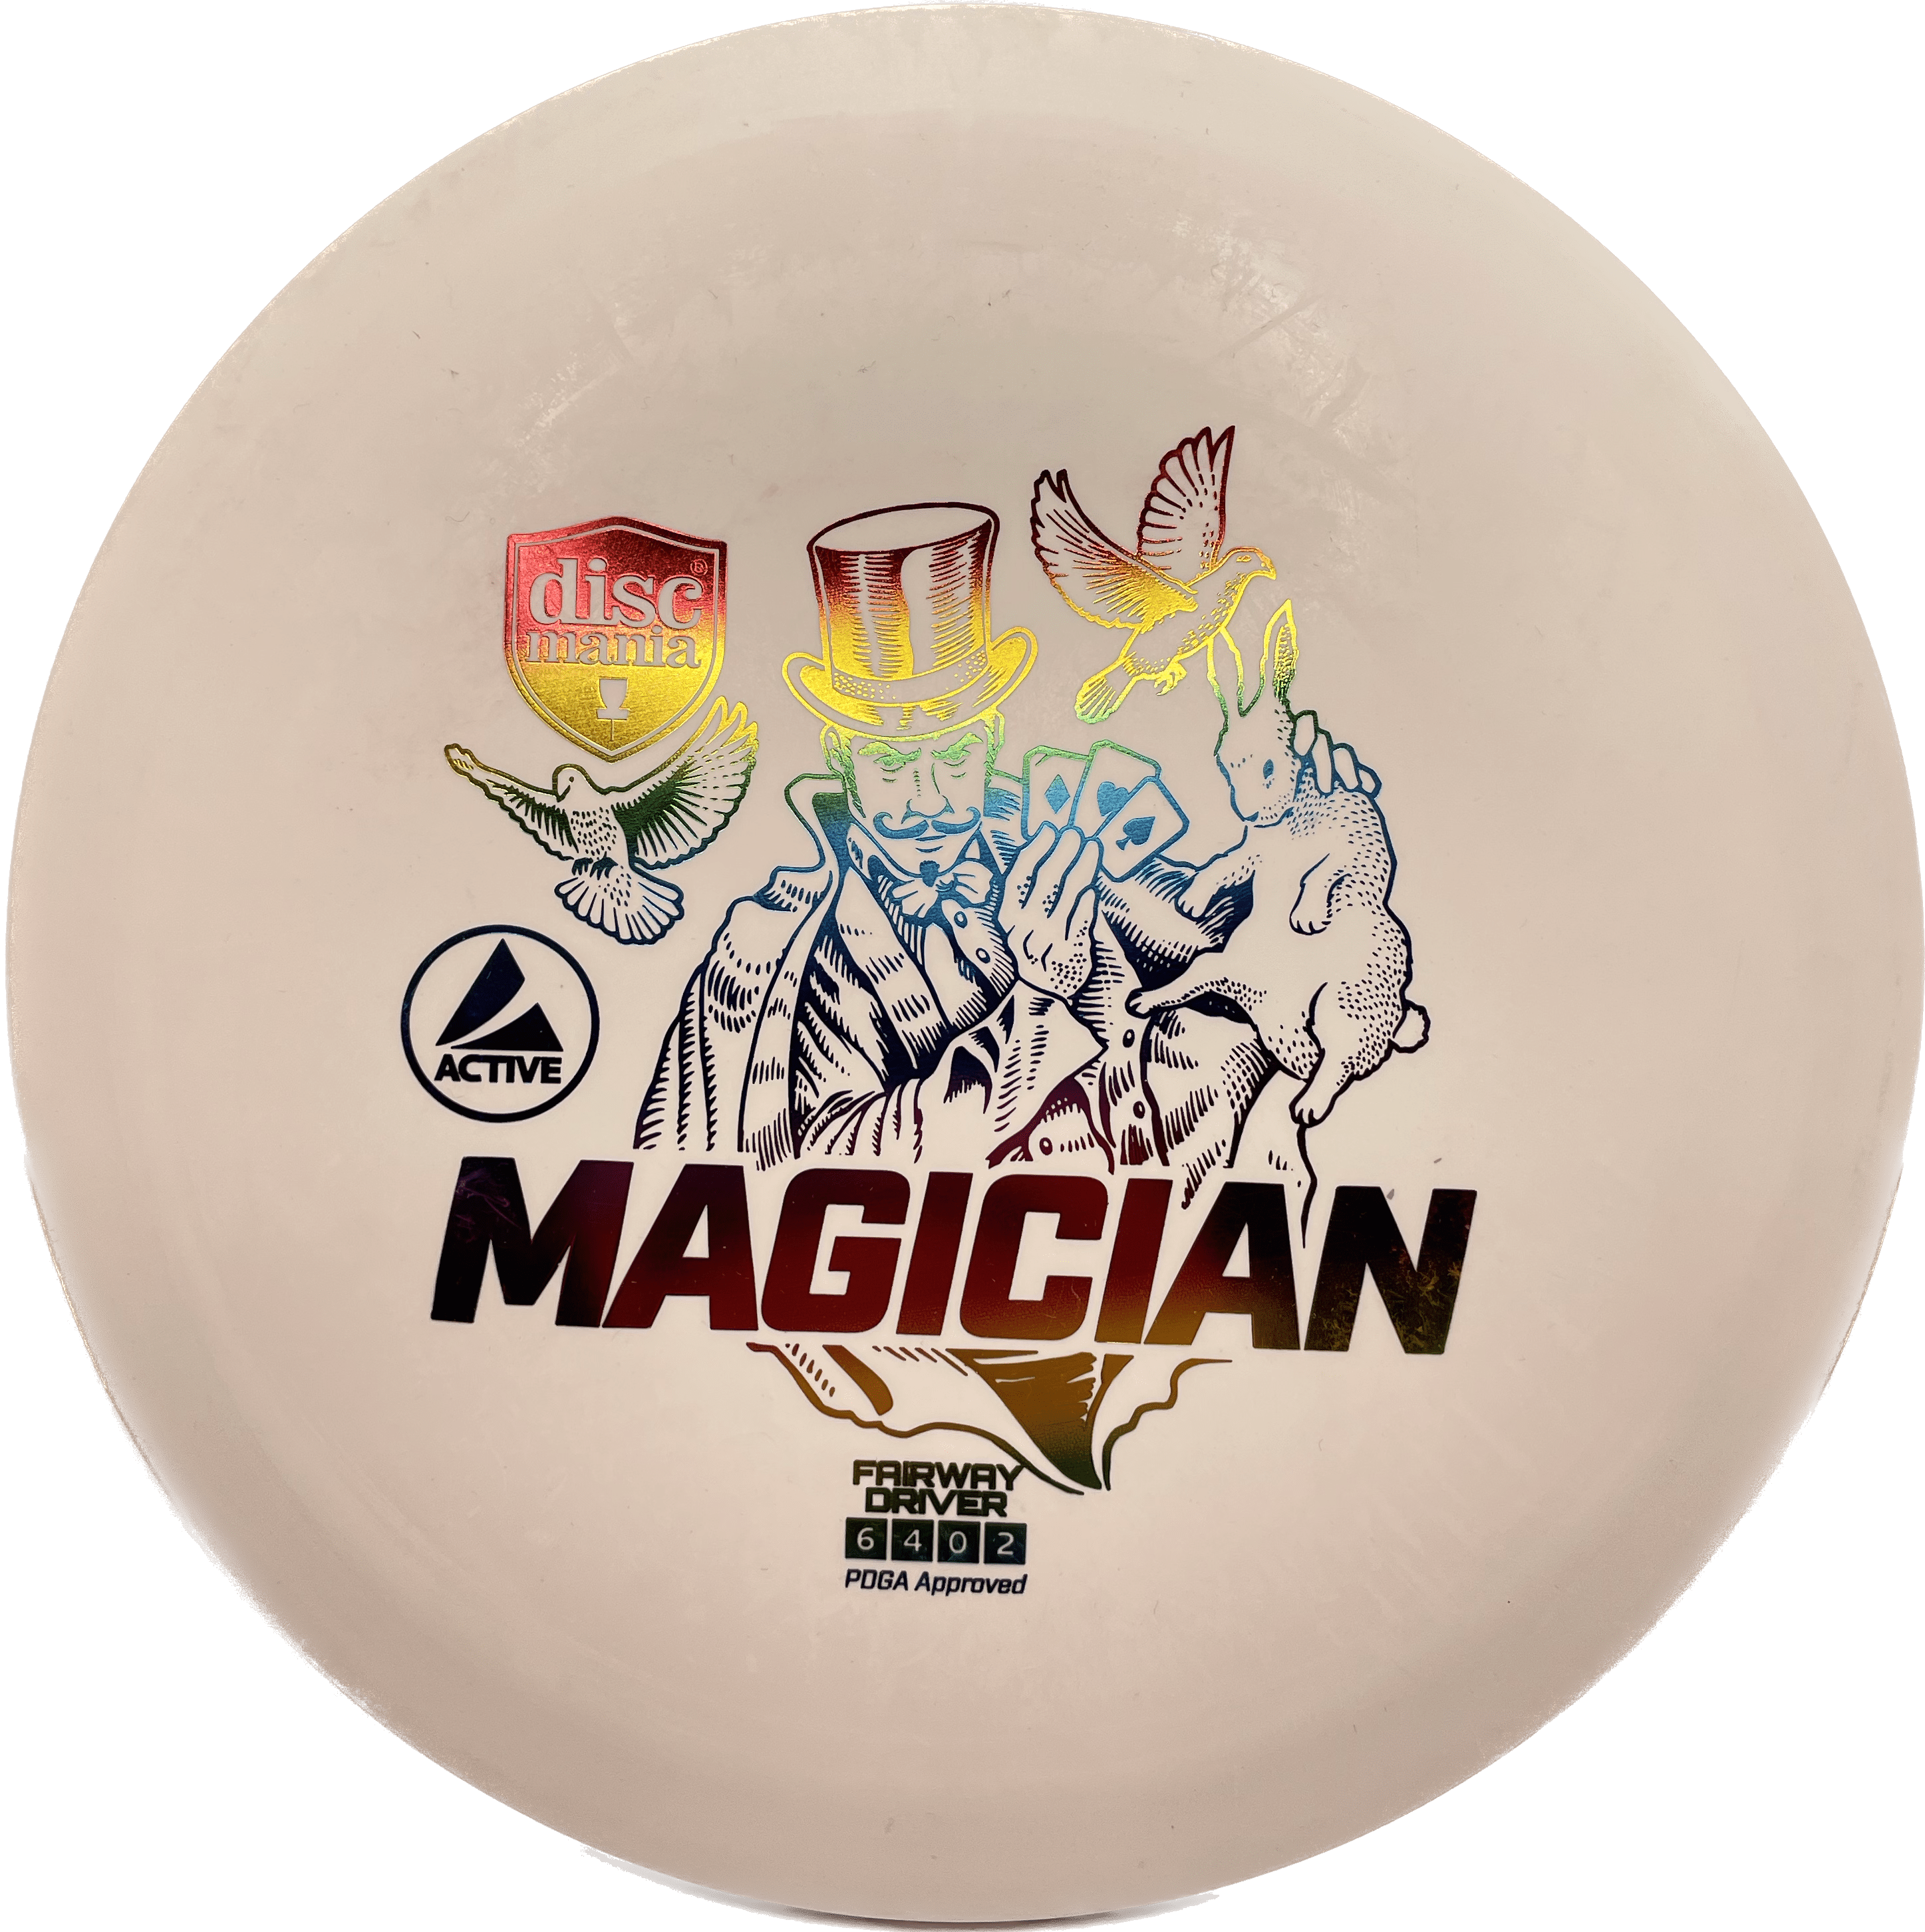 Discmania Magician